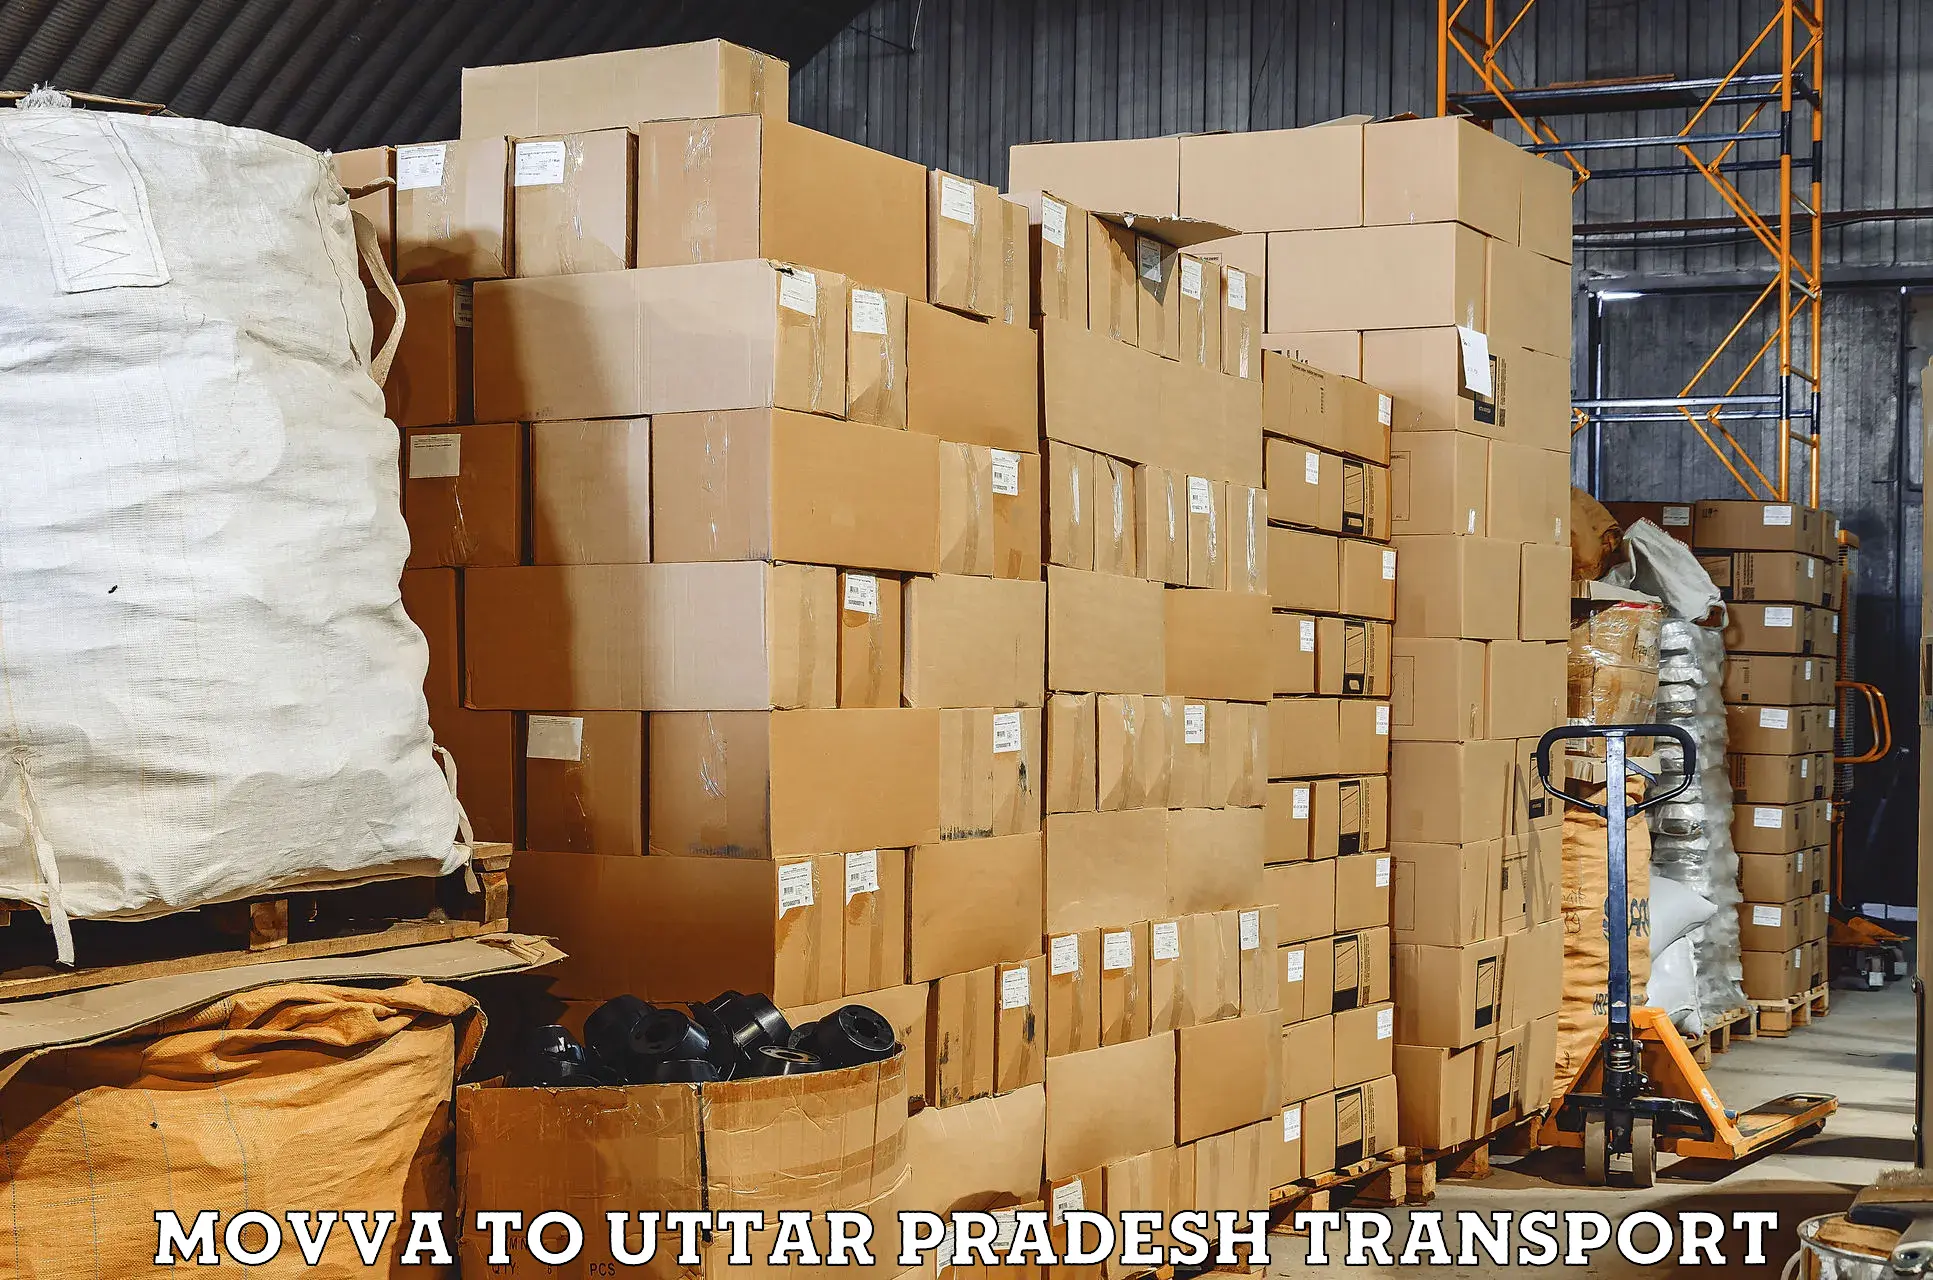 Daily transport service Movva to Varanasi